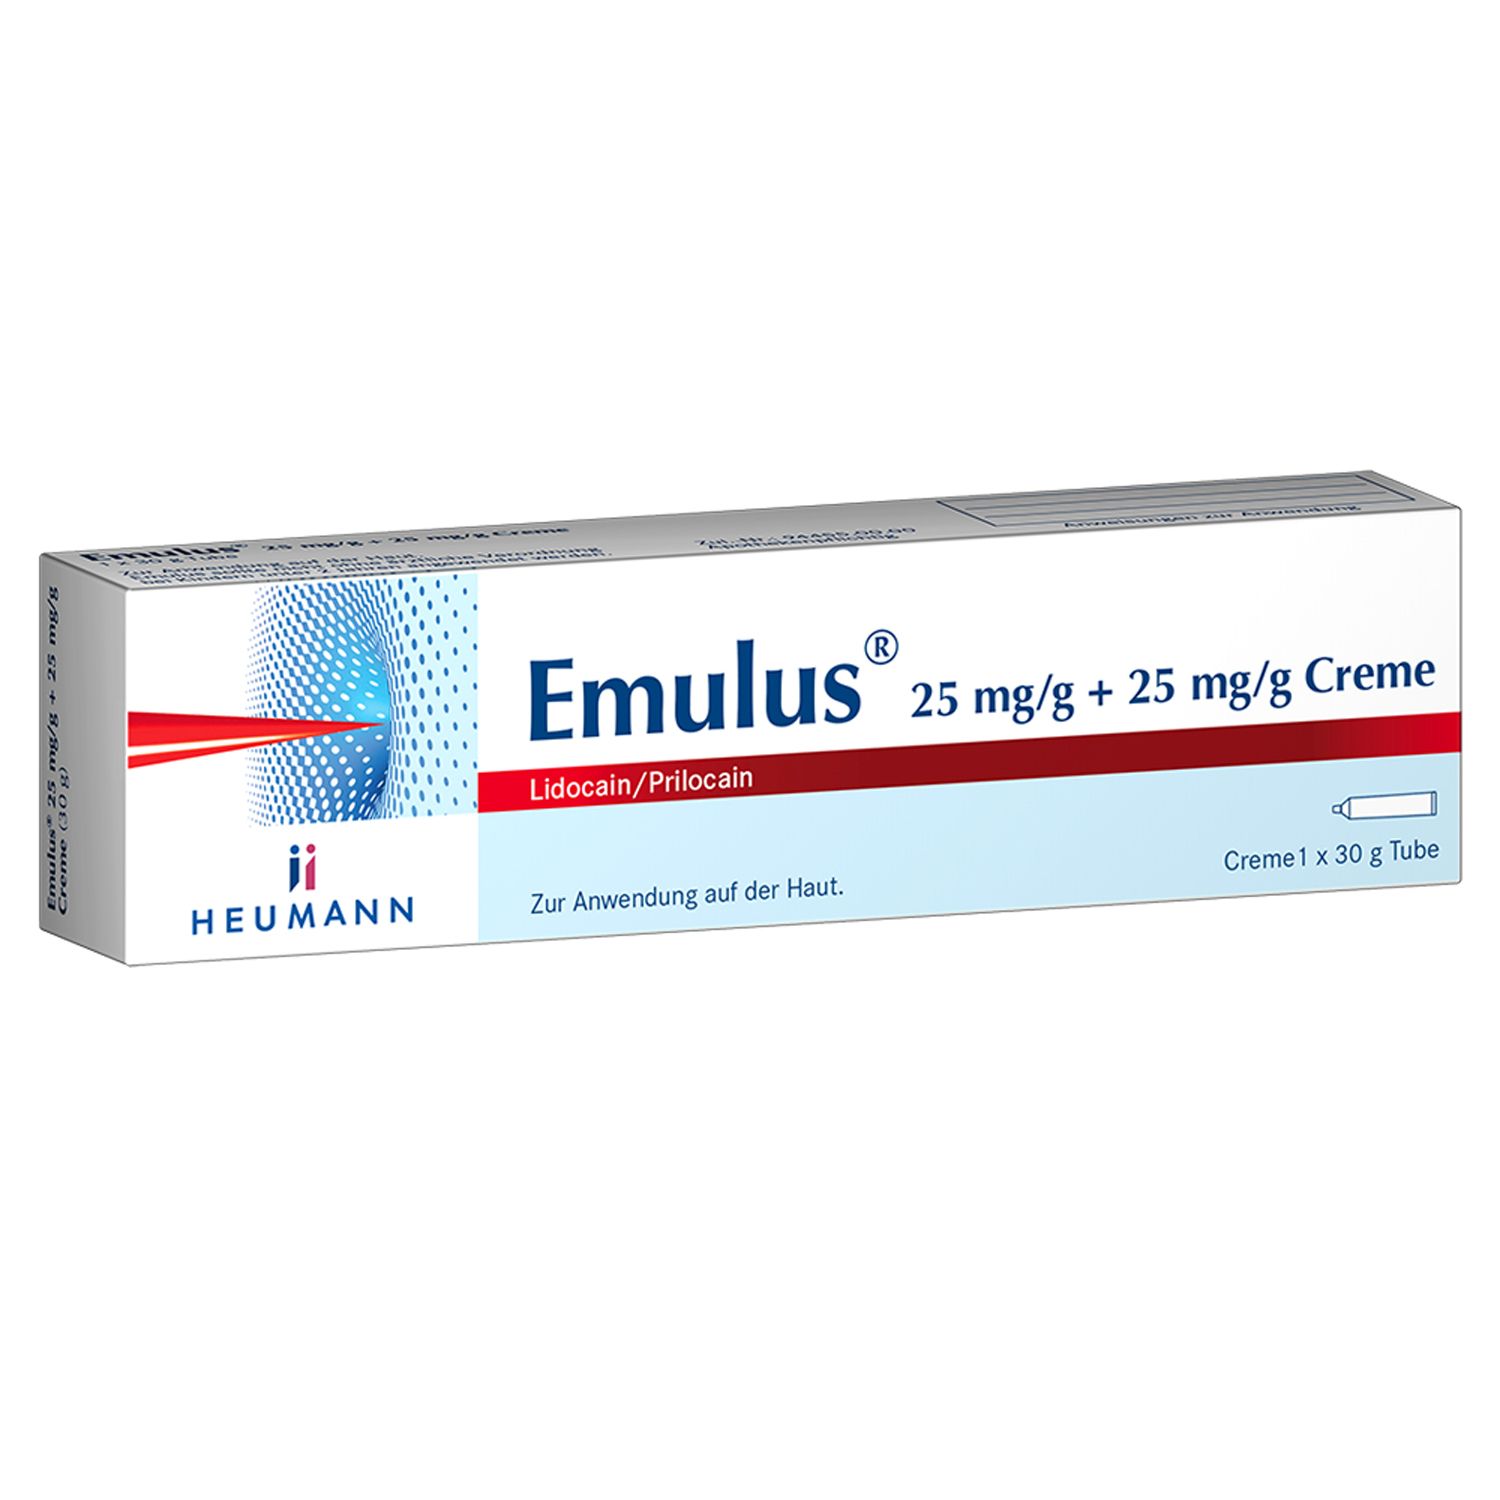 Emulus 25 mg/g + 25mg/g